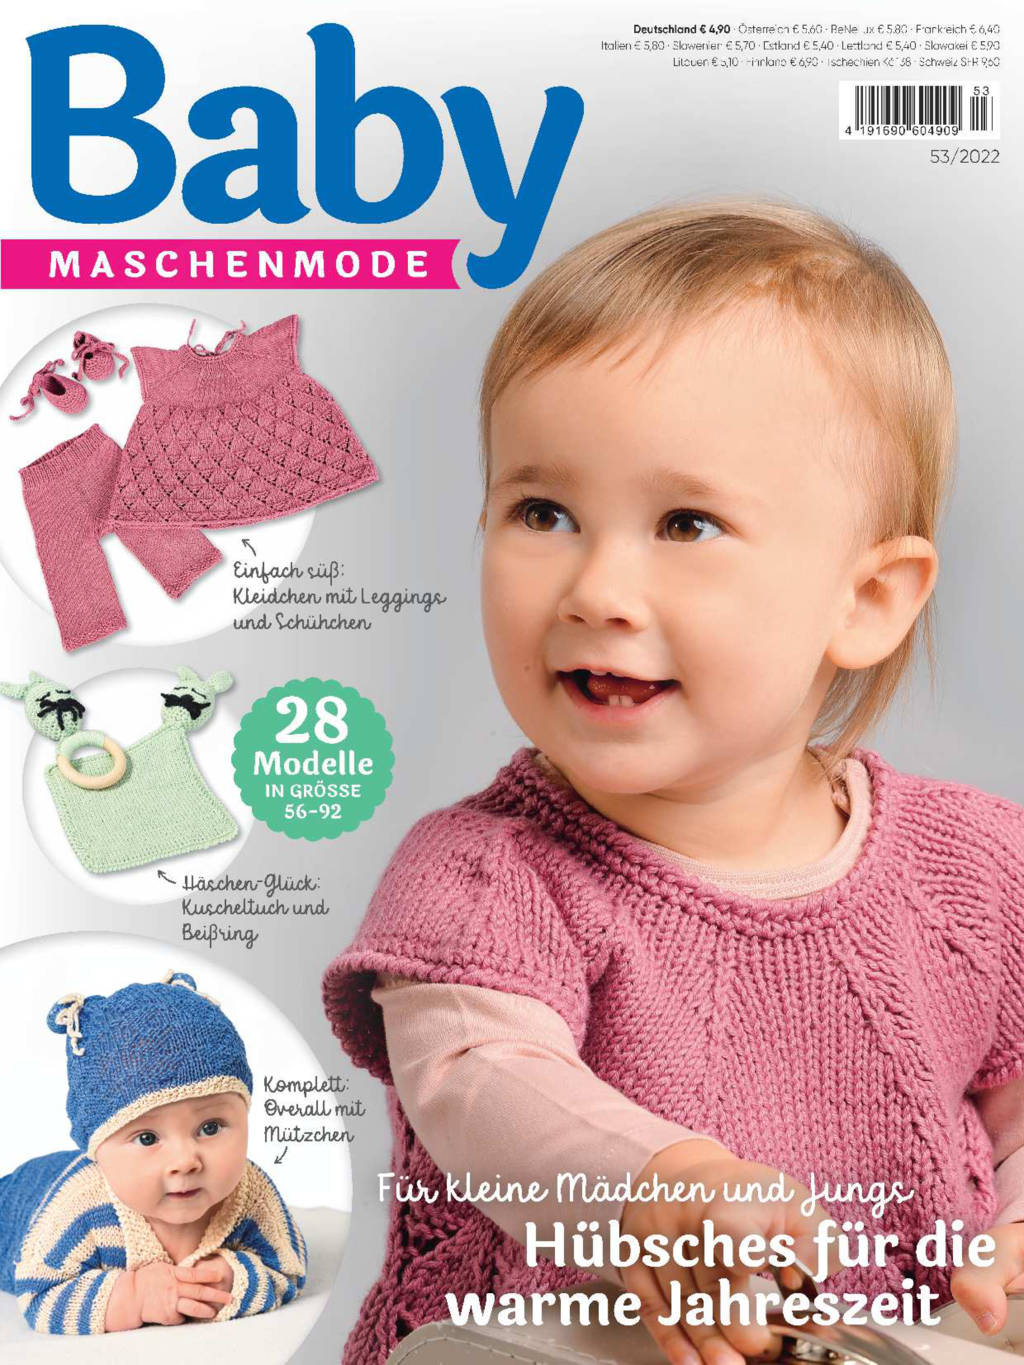 Baby Maschenmode E-Paper-Archiv 2022-alle Ausgaben als E-Paper-Sparpaket